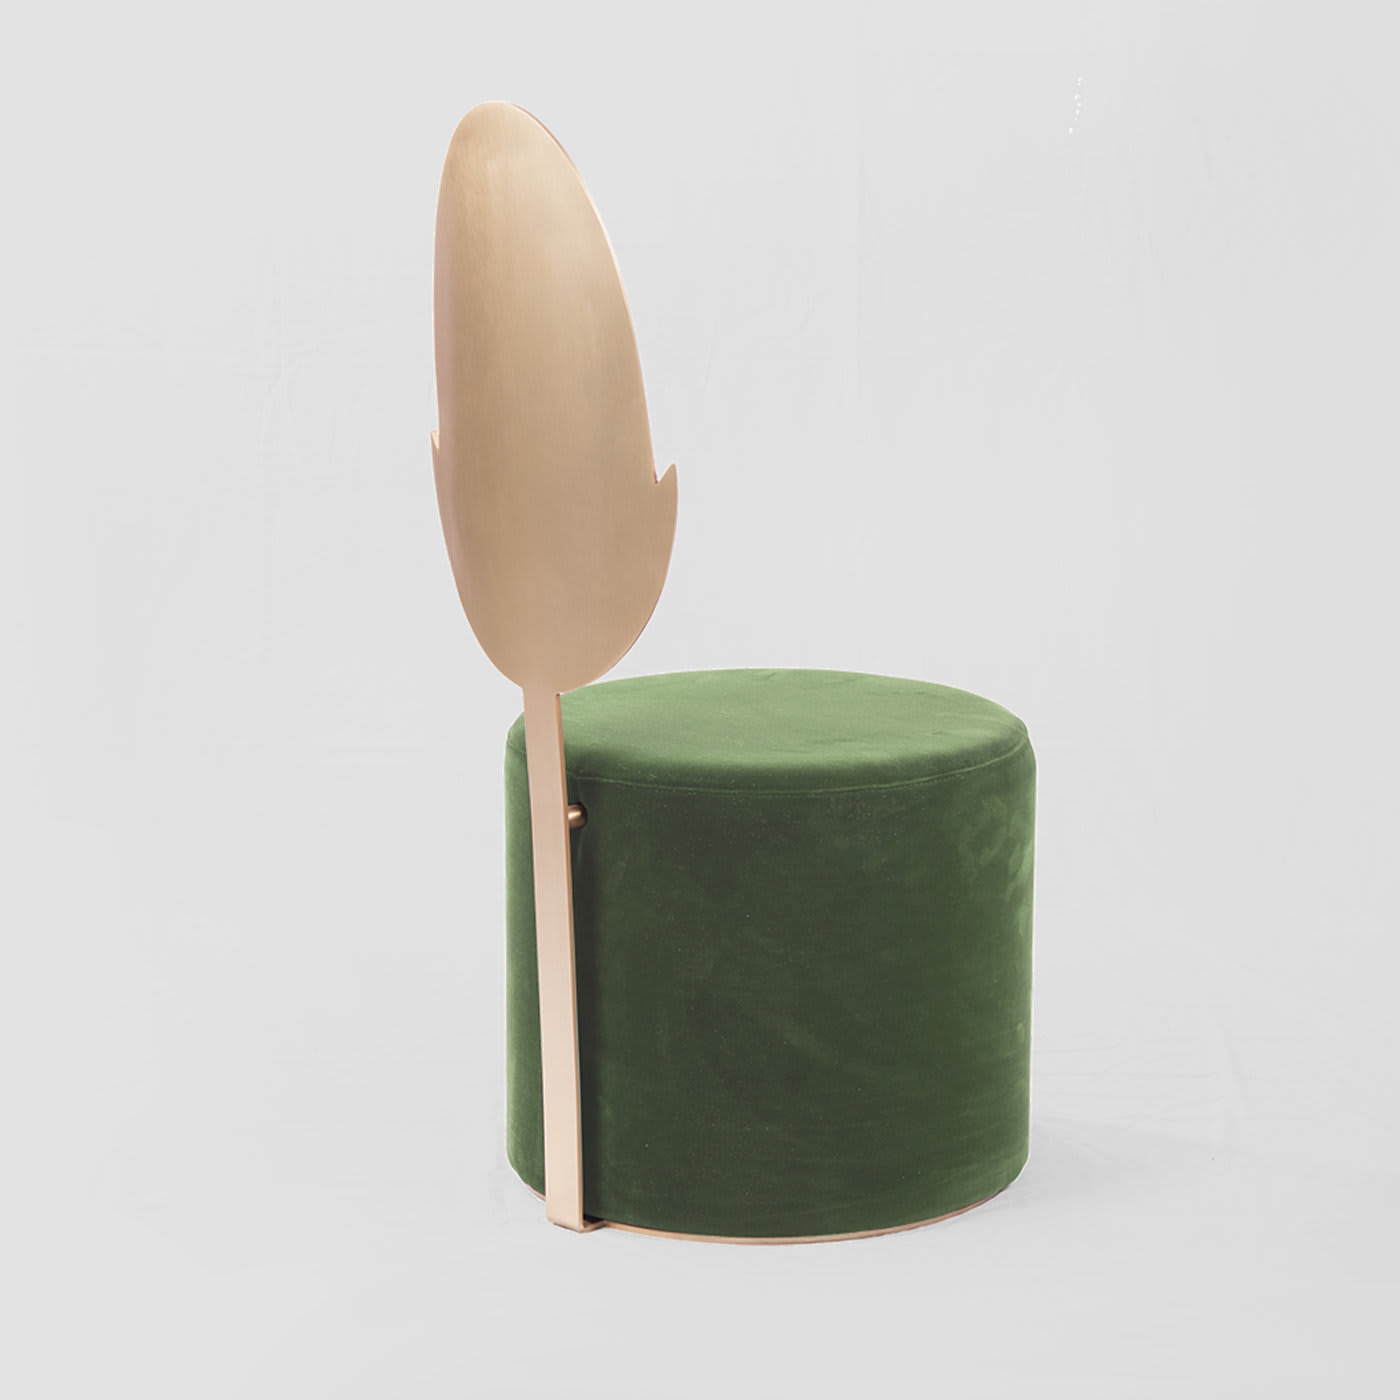 Jasmine Green Pouf by Artefatto Design Studio - Secolo